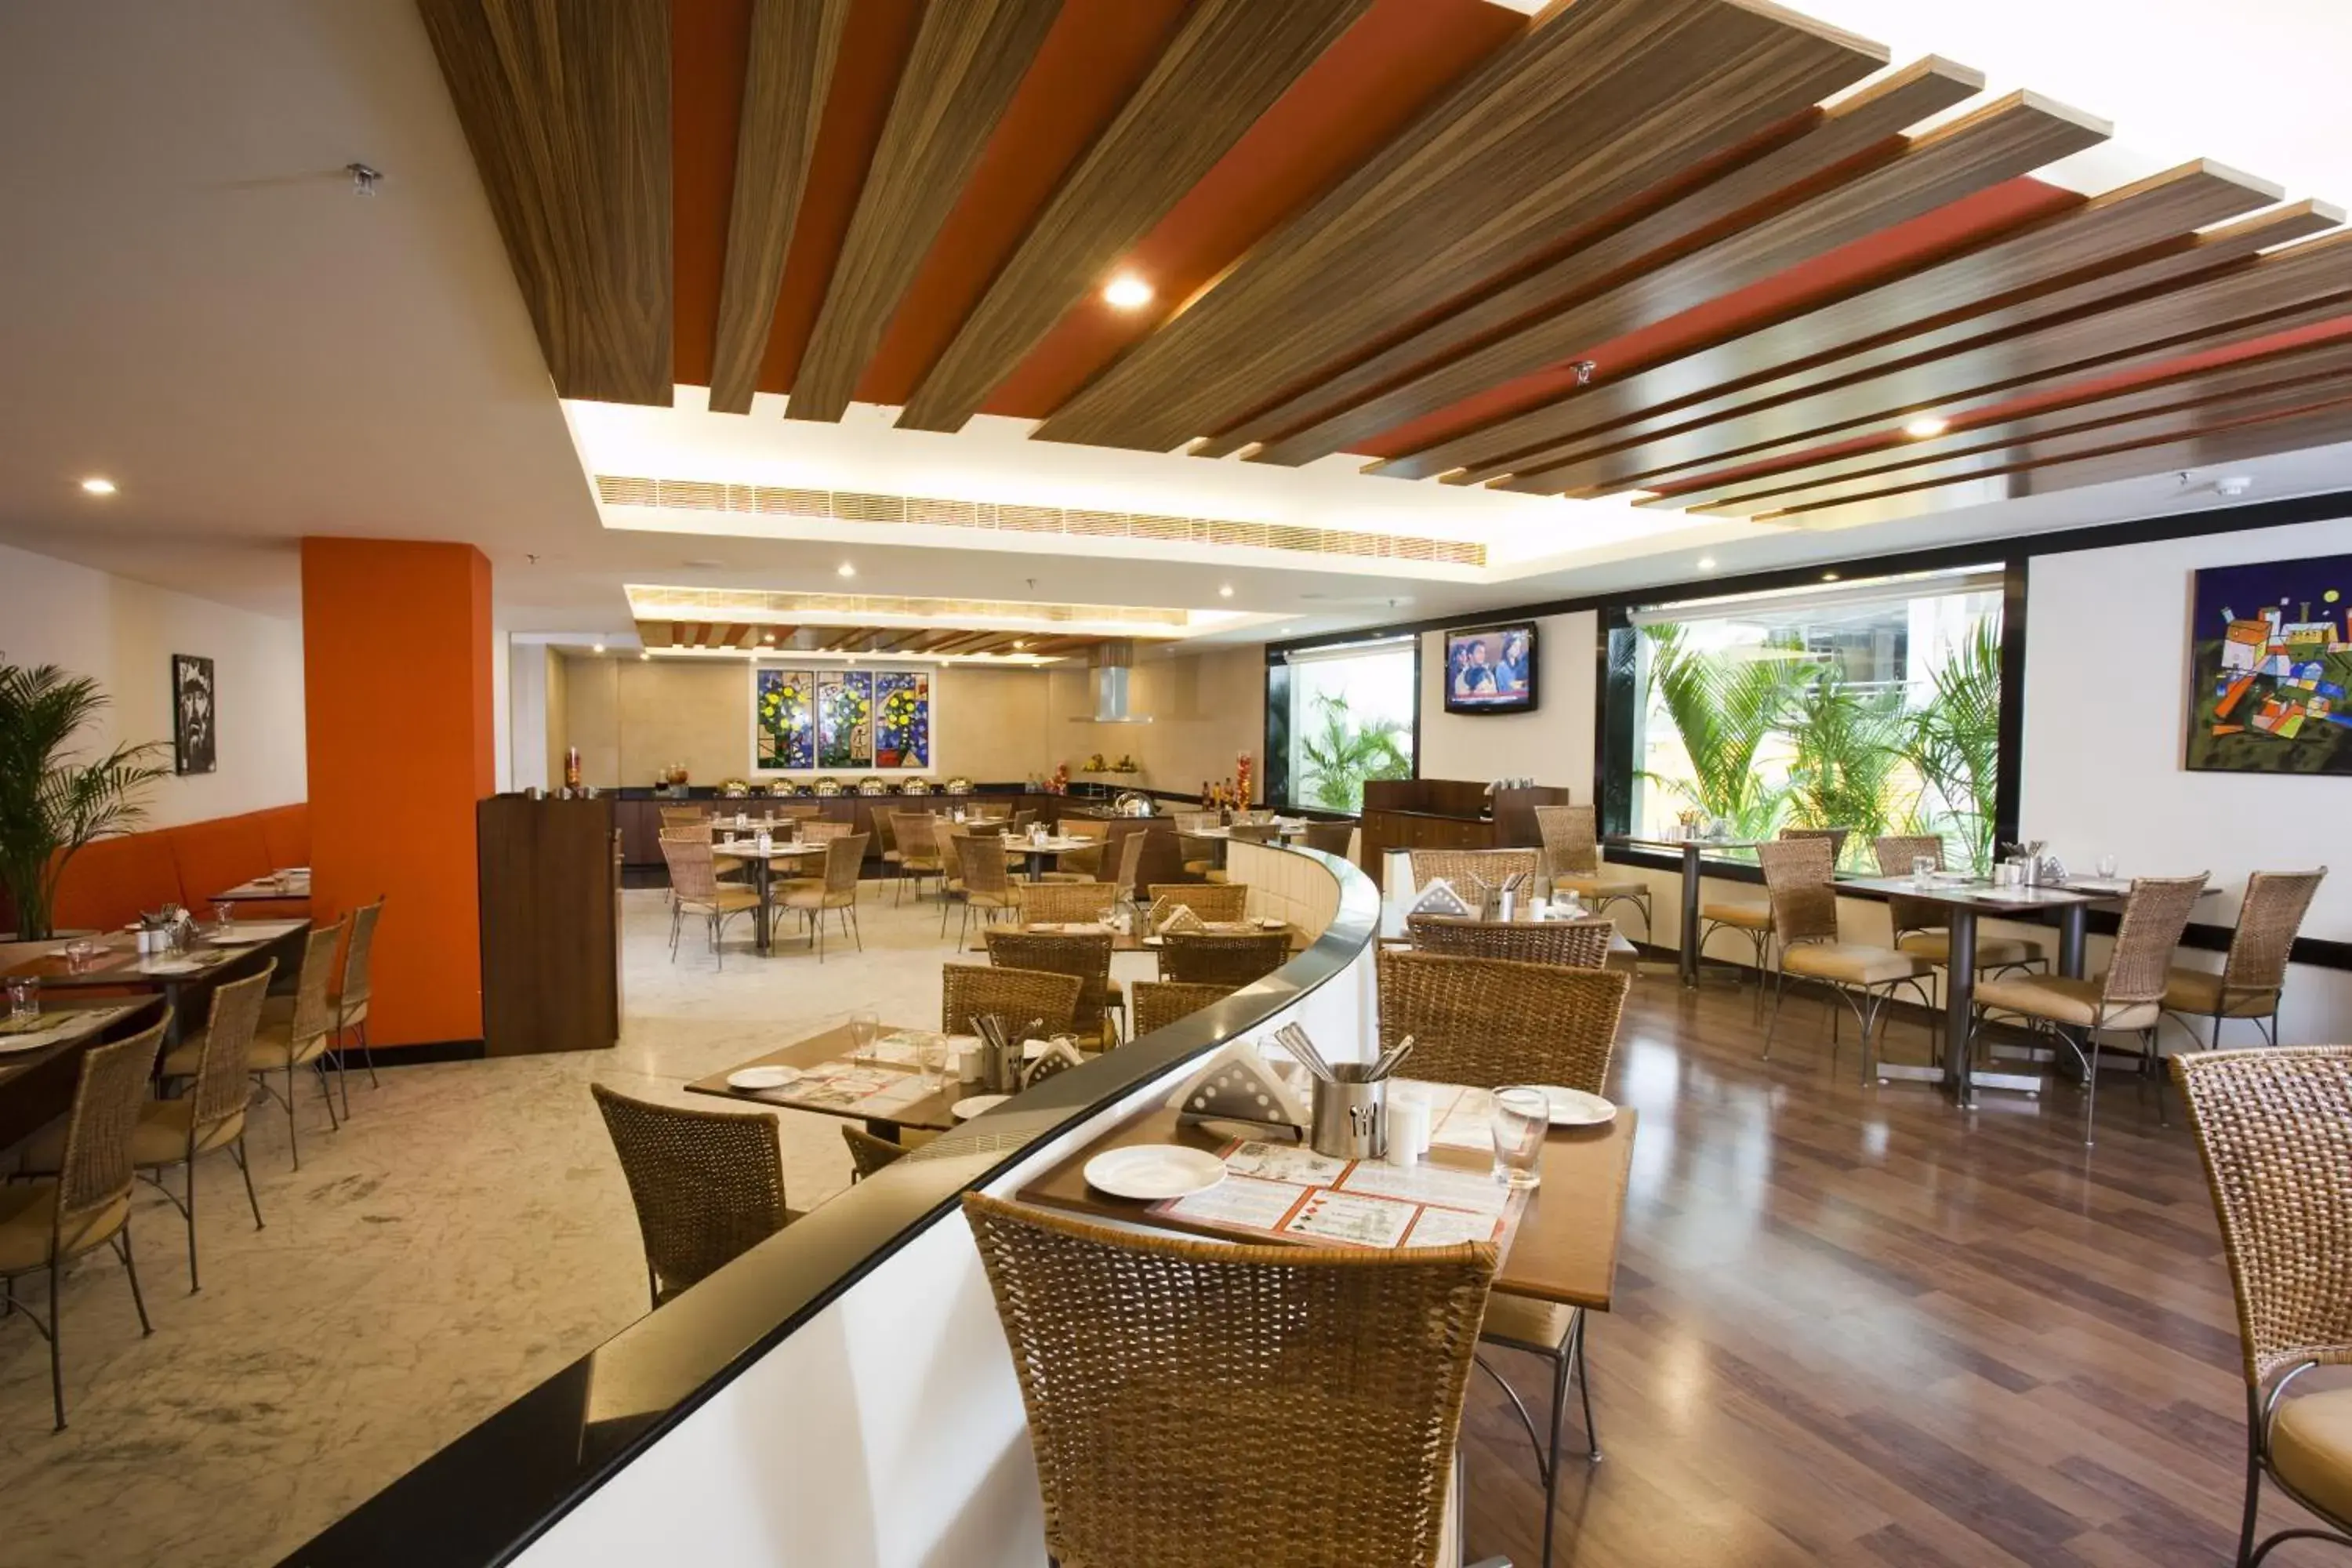 Restaurant/Places to Eat in Lemon Tree Hotel, Udyog Vihar, Gurugram